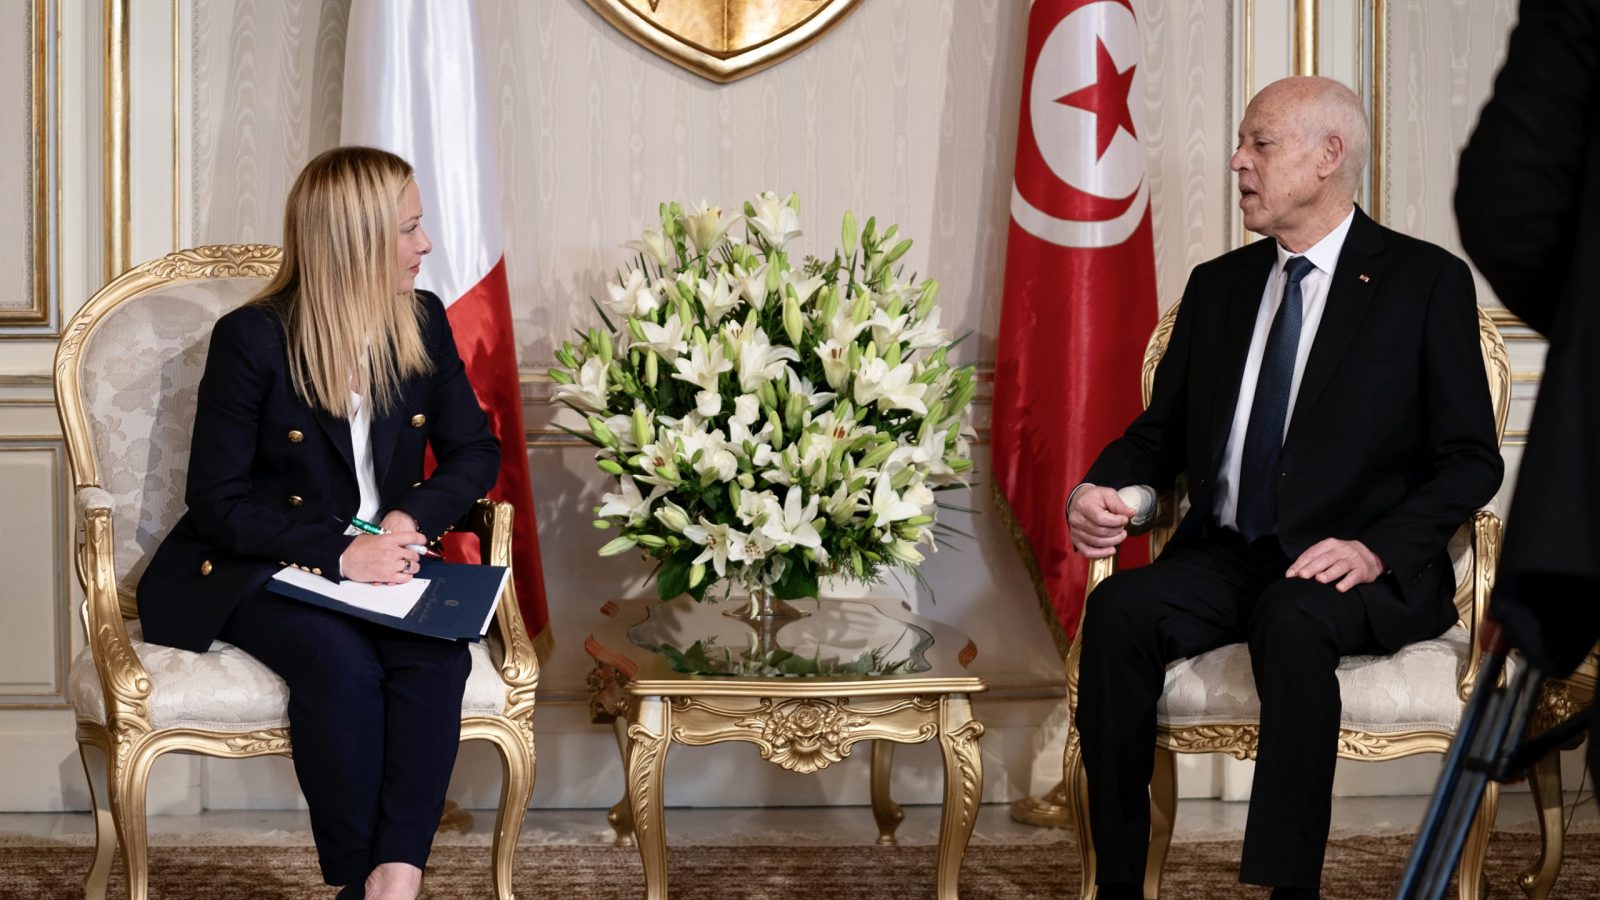 برلماني أوروبي: ميلوني فشلت بشأن تونس